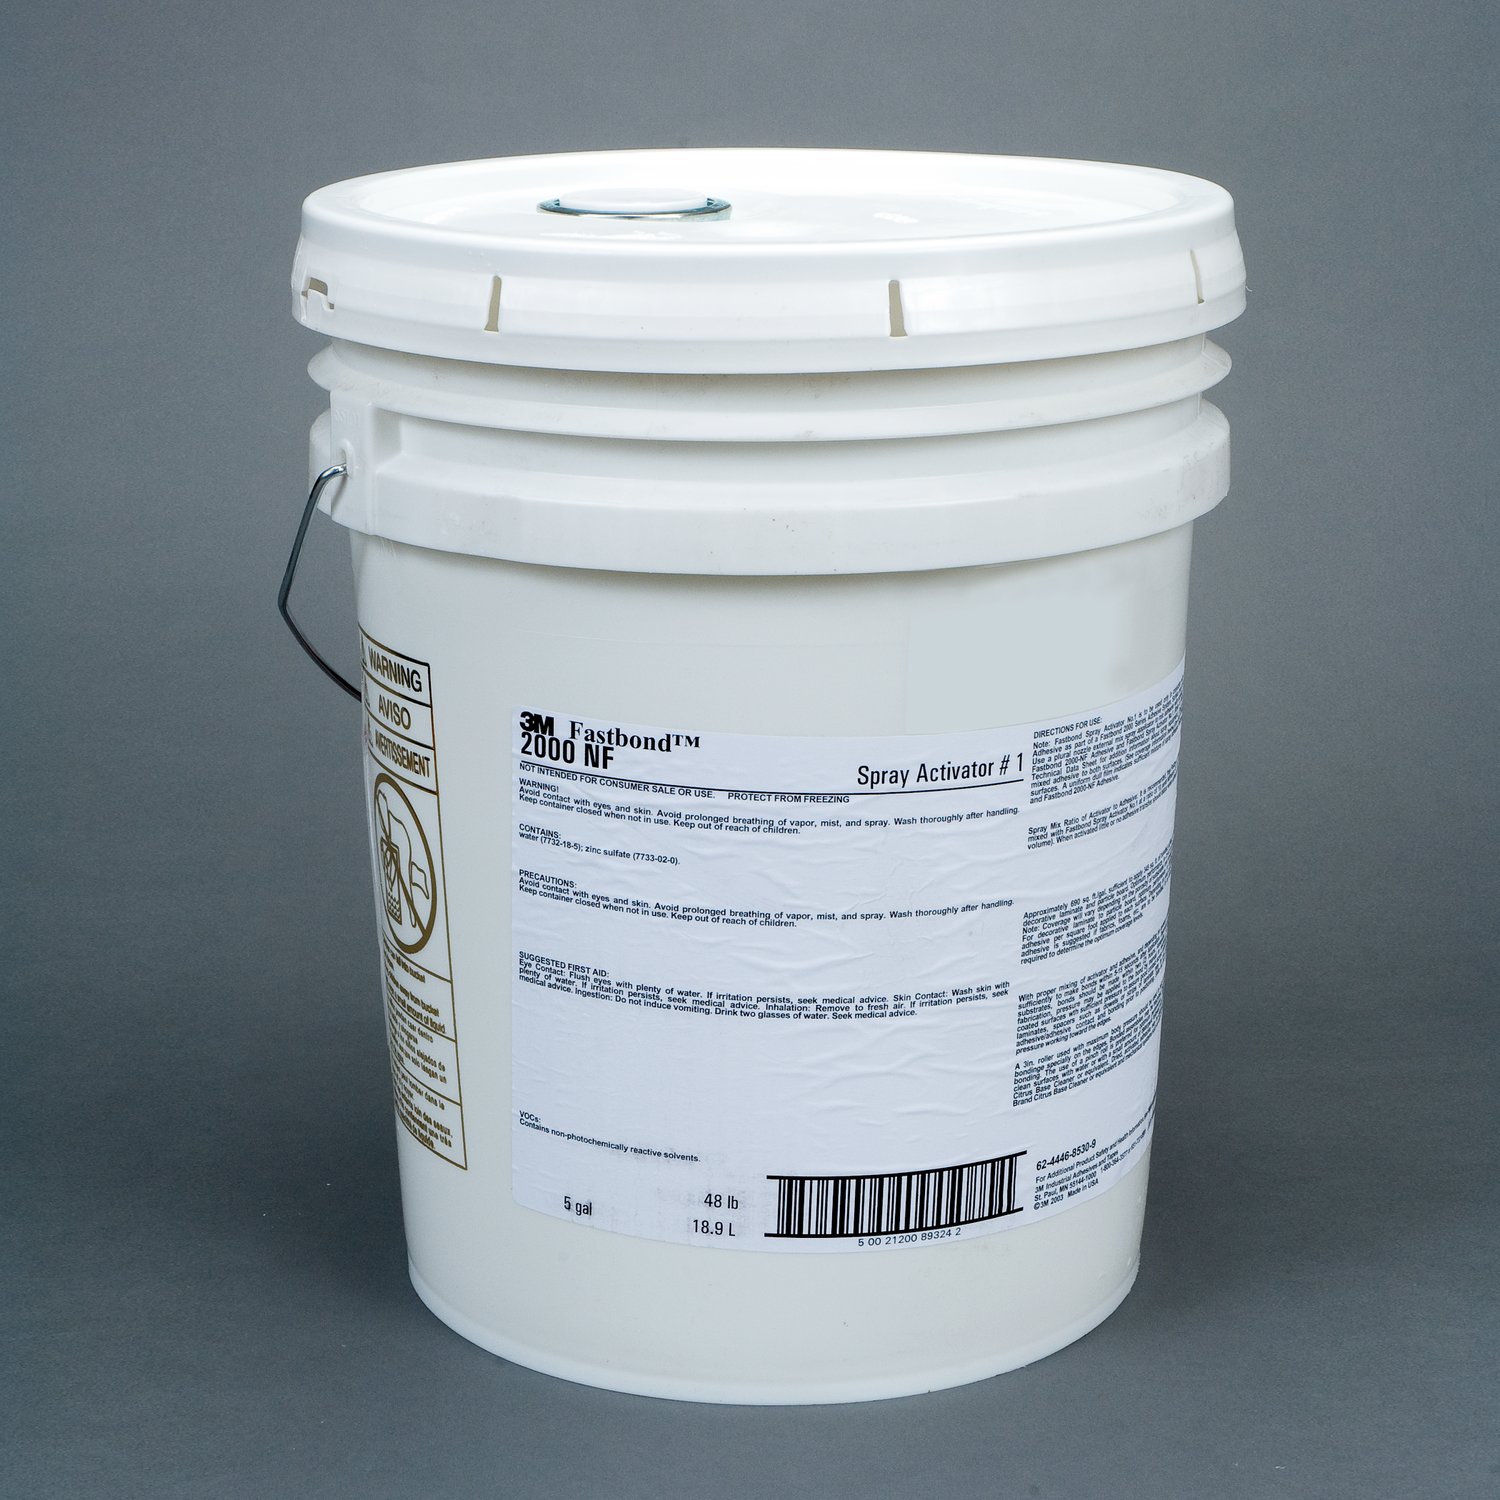 7000121402 - 3M Fastbond Spray Activator 1, 5 Gallon Pour Spout Drum (Pail)